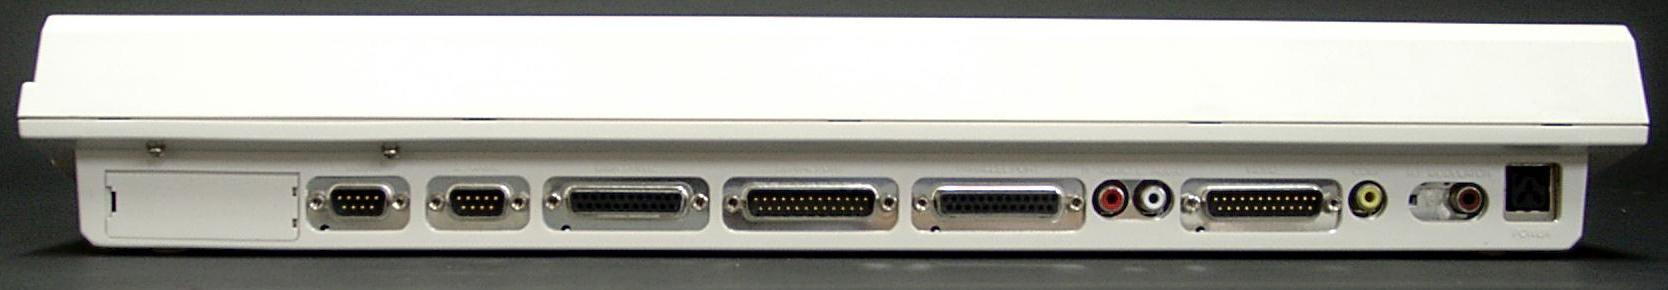 Amiga 1200 rear ports